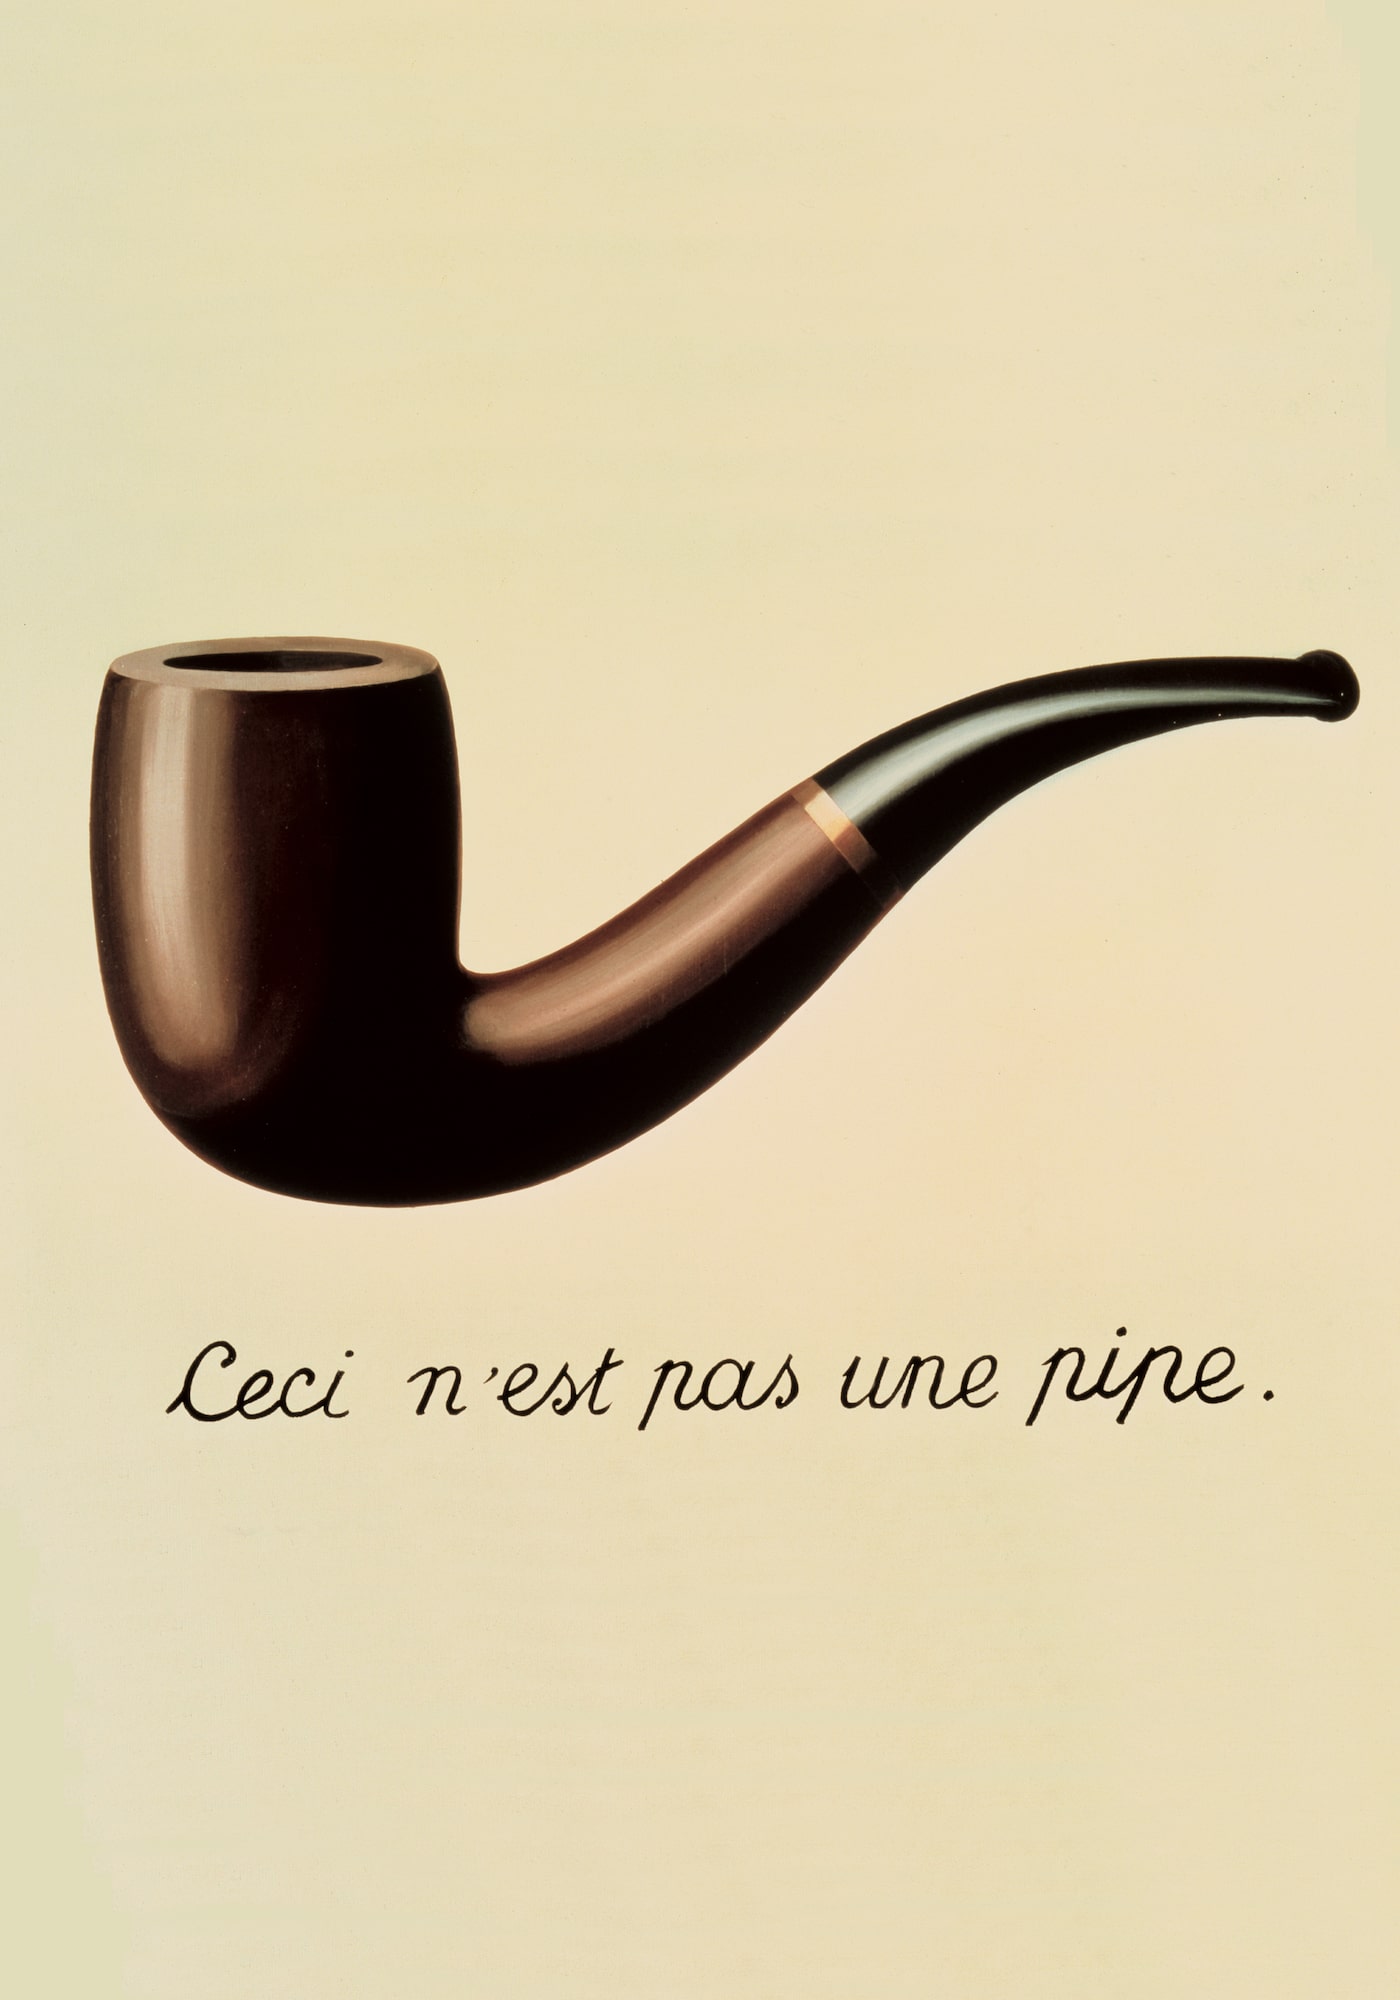 « Qui pourrait fumer la pipe de mon tableau ? Personne. » Magritte résume ainsi l’enjeu de son célèbre tableau, La trahison des images : « Ceci n’est pas une pipe » car il s’agit de l’image d’une pipe, et non de l’objet réel.